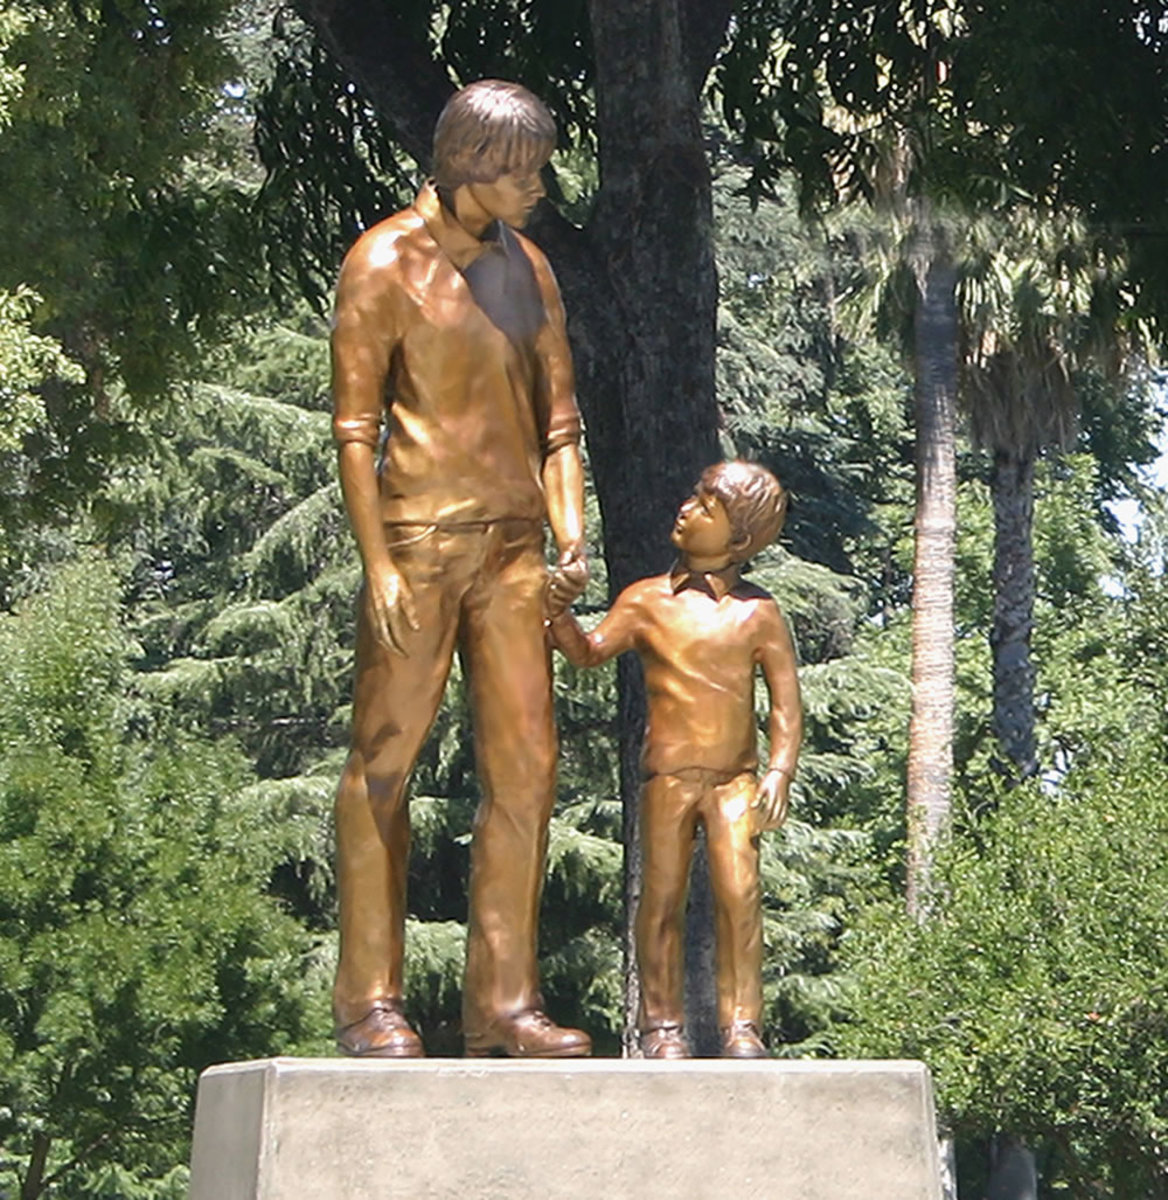 The memorial for missing children